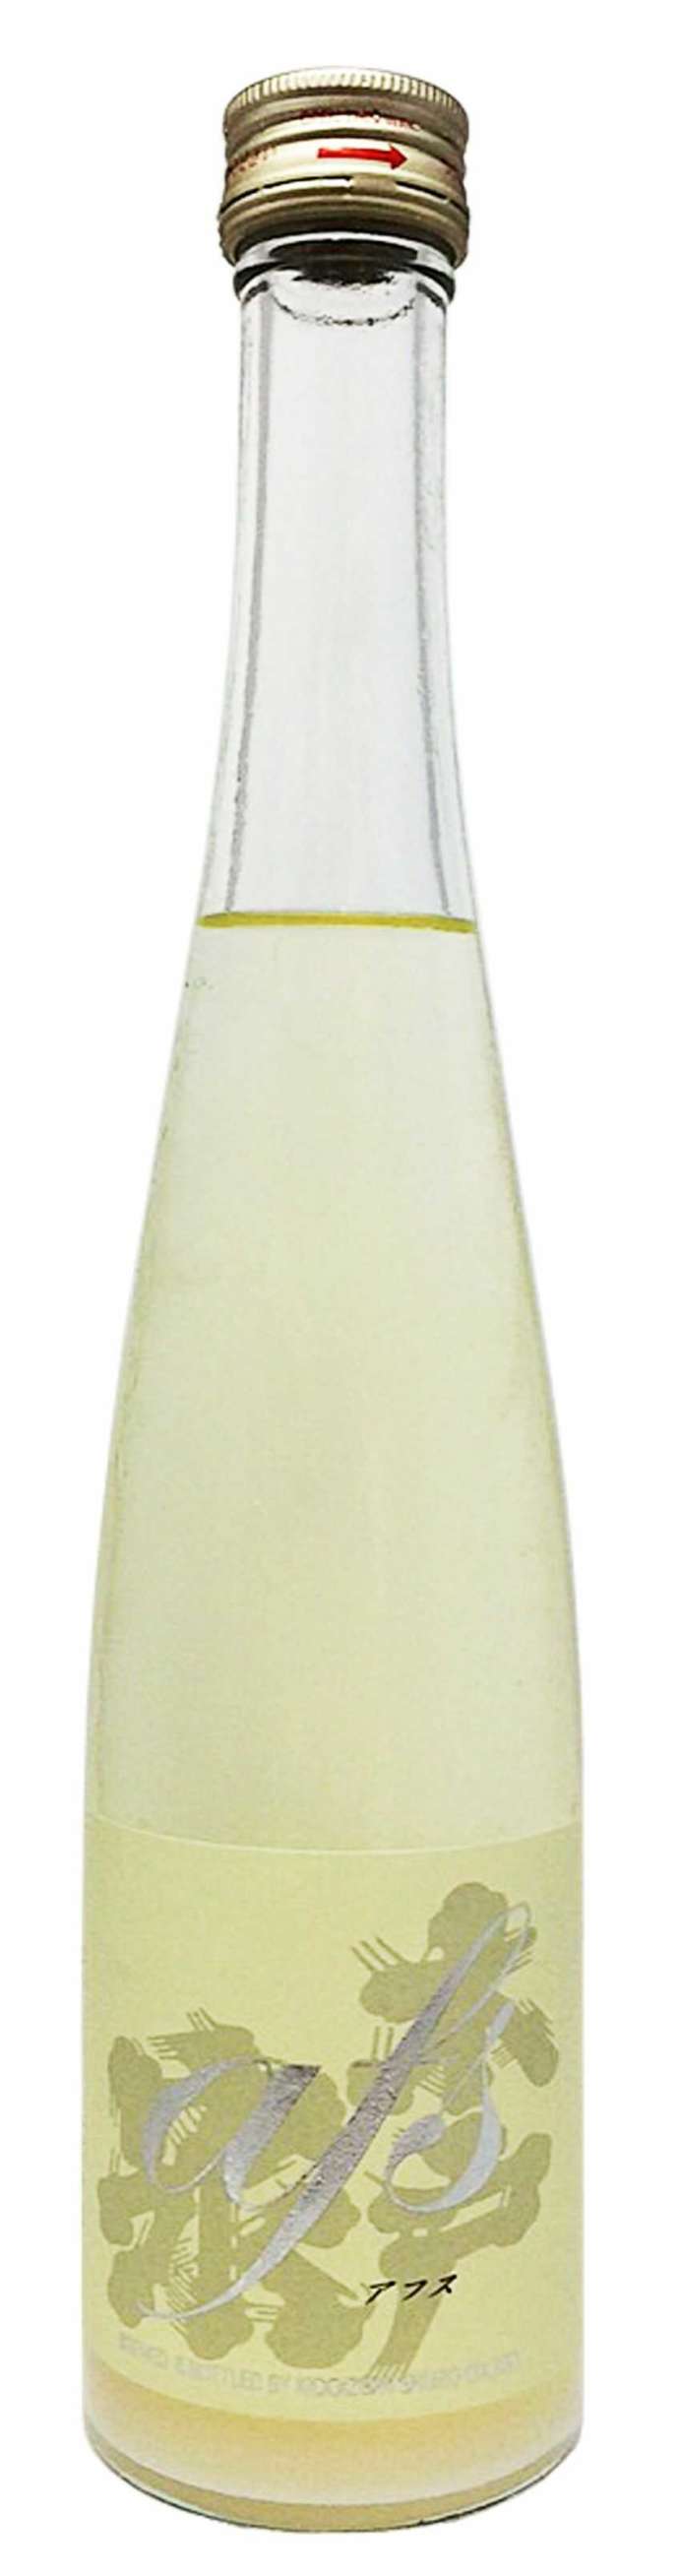 日本酒初心者にもおすすめなアフススパークリングのボトルの写真